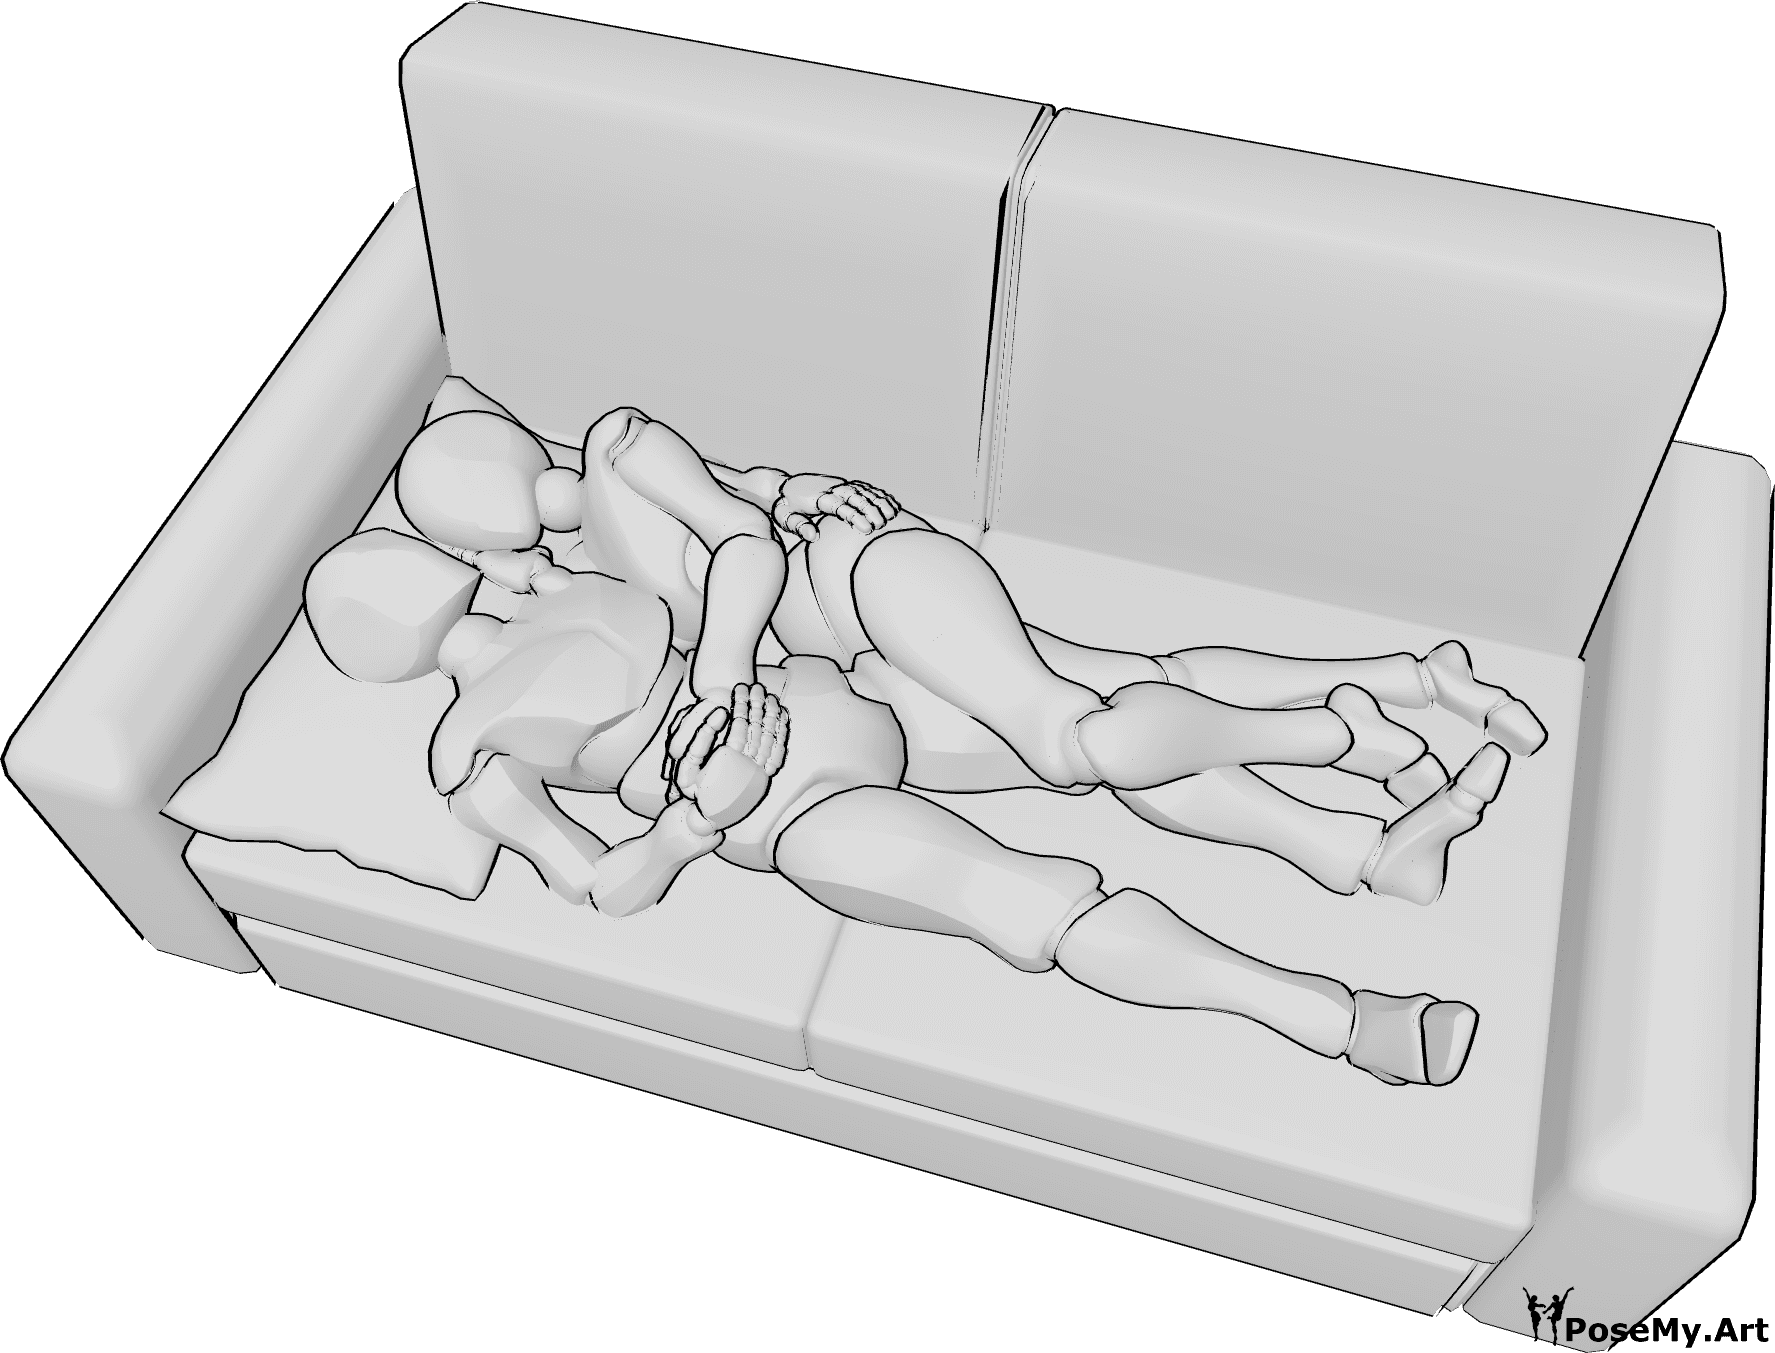 Référence des poses- Pose allongée et câline - Une femme et un homme sont allongés sur le canapé et se font des câlins.